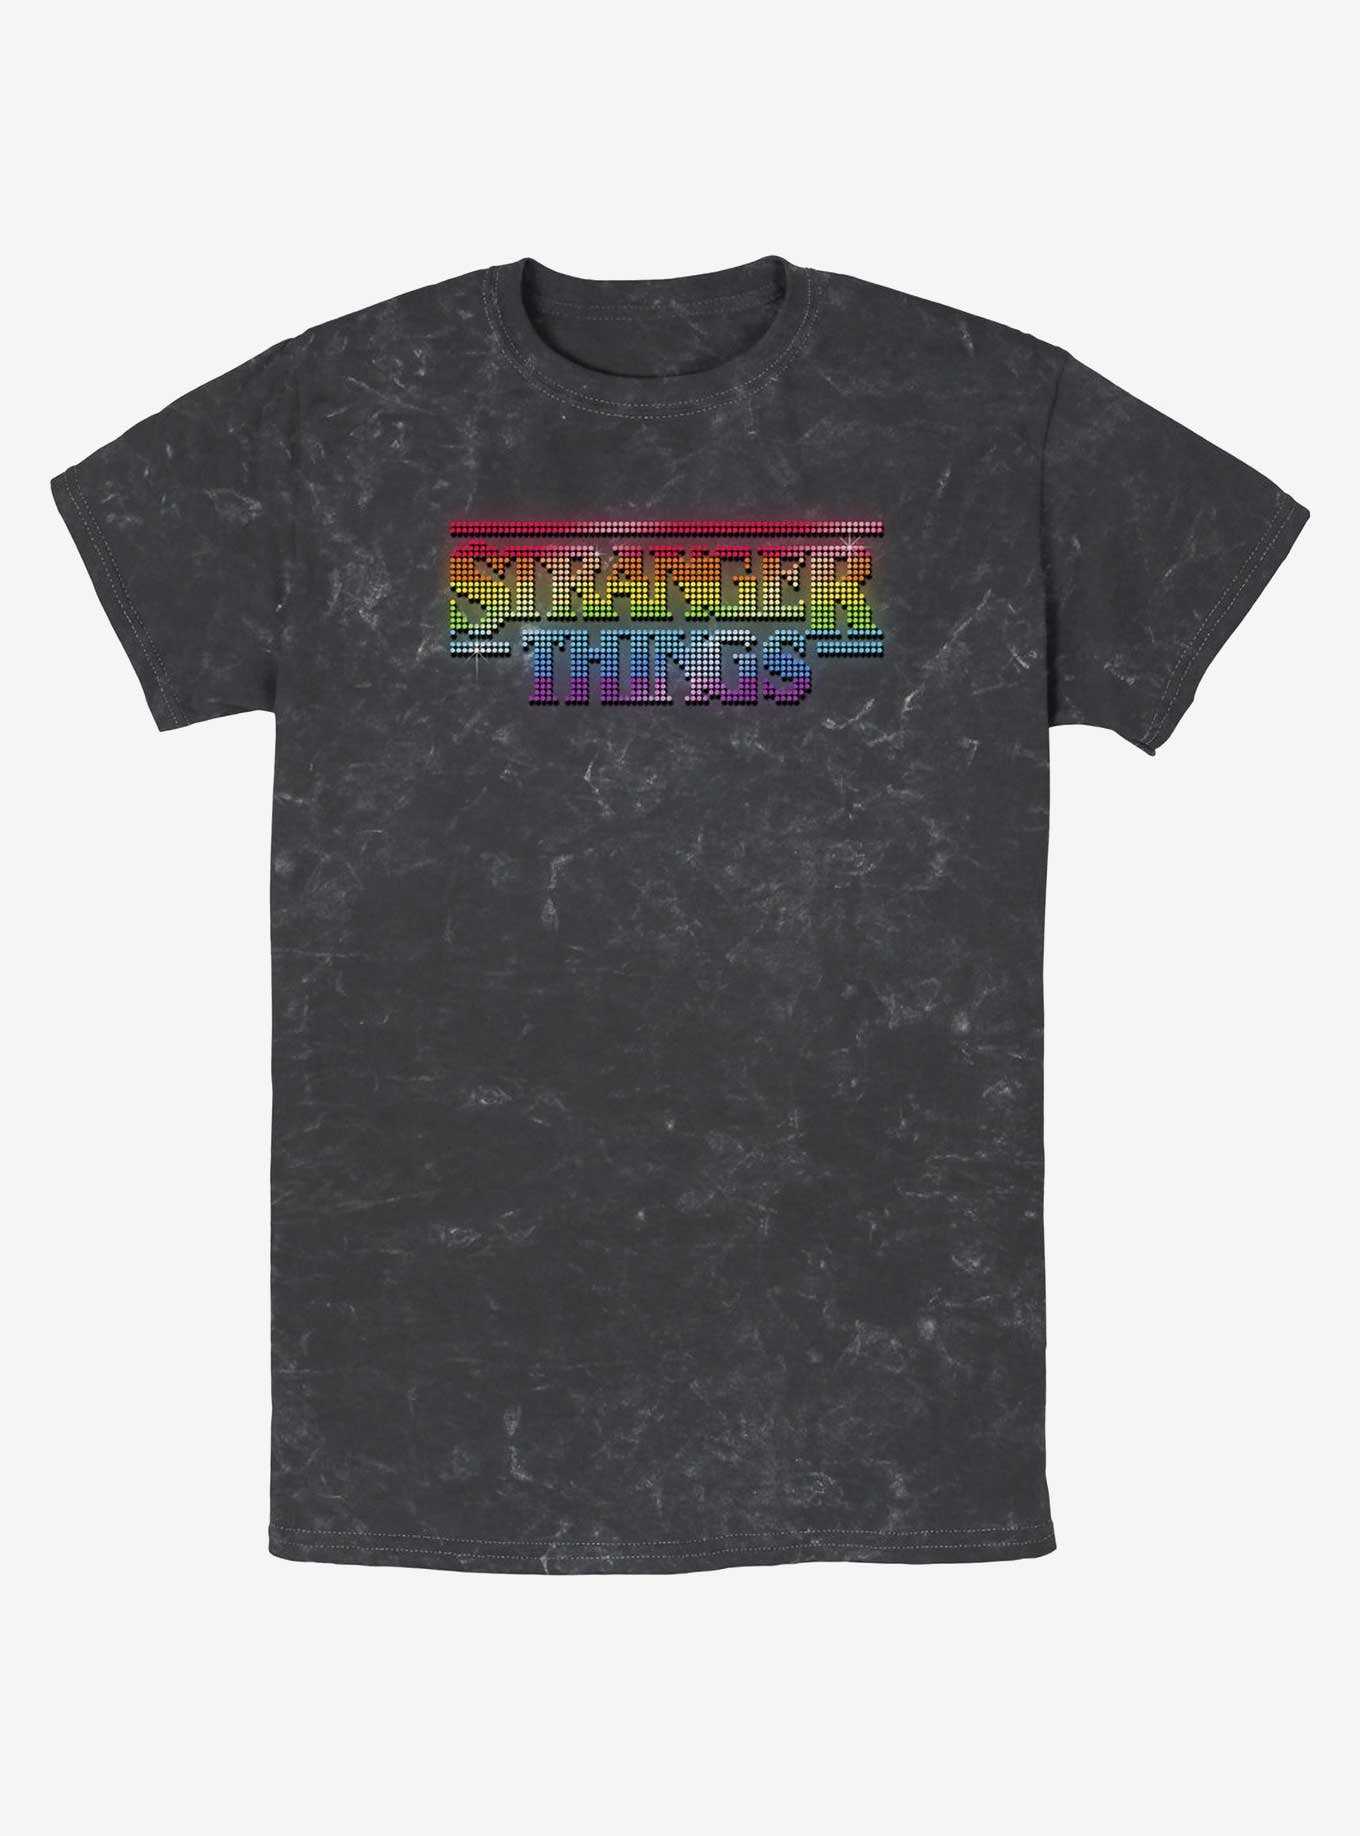 Stranger Things Rainbow Logo Mineral Wash T-Shirt, , hi-res